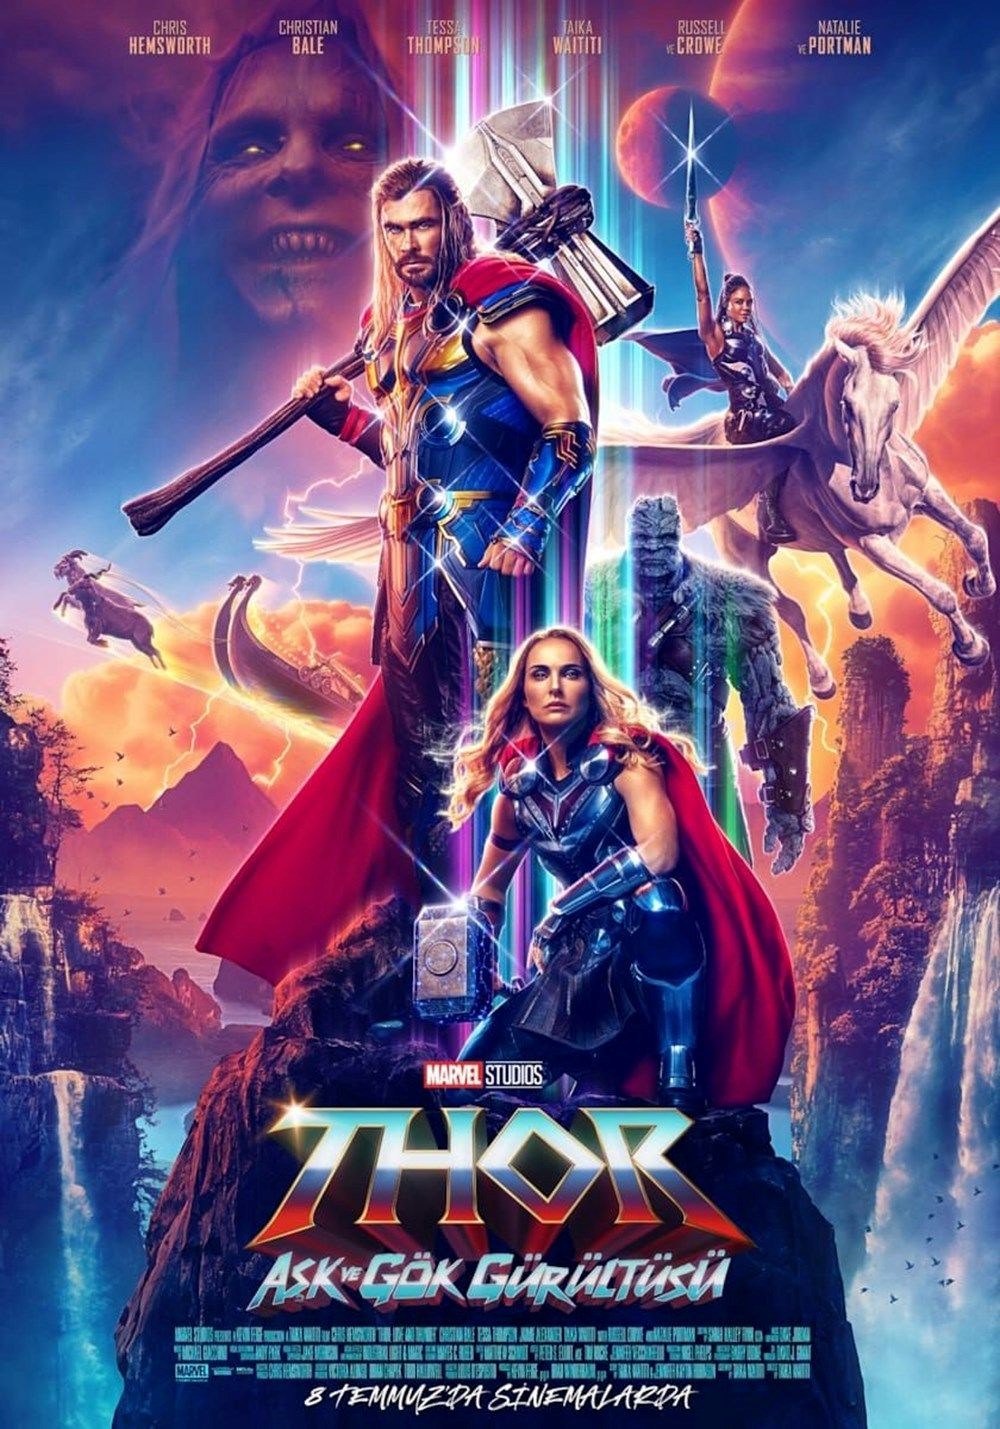 Thor: Aşk ve Gök Gürültüsü gişede lider (8-10 Temmuz 2022 ABD gişe rakamları) - 10